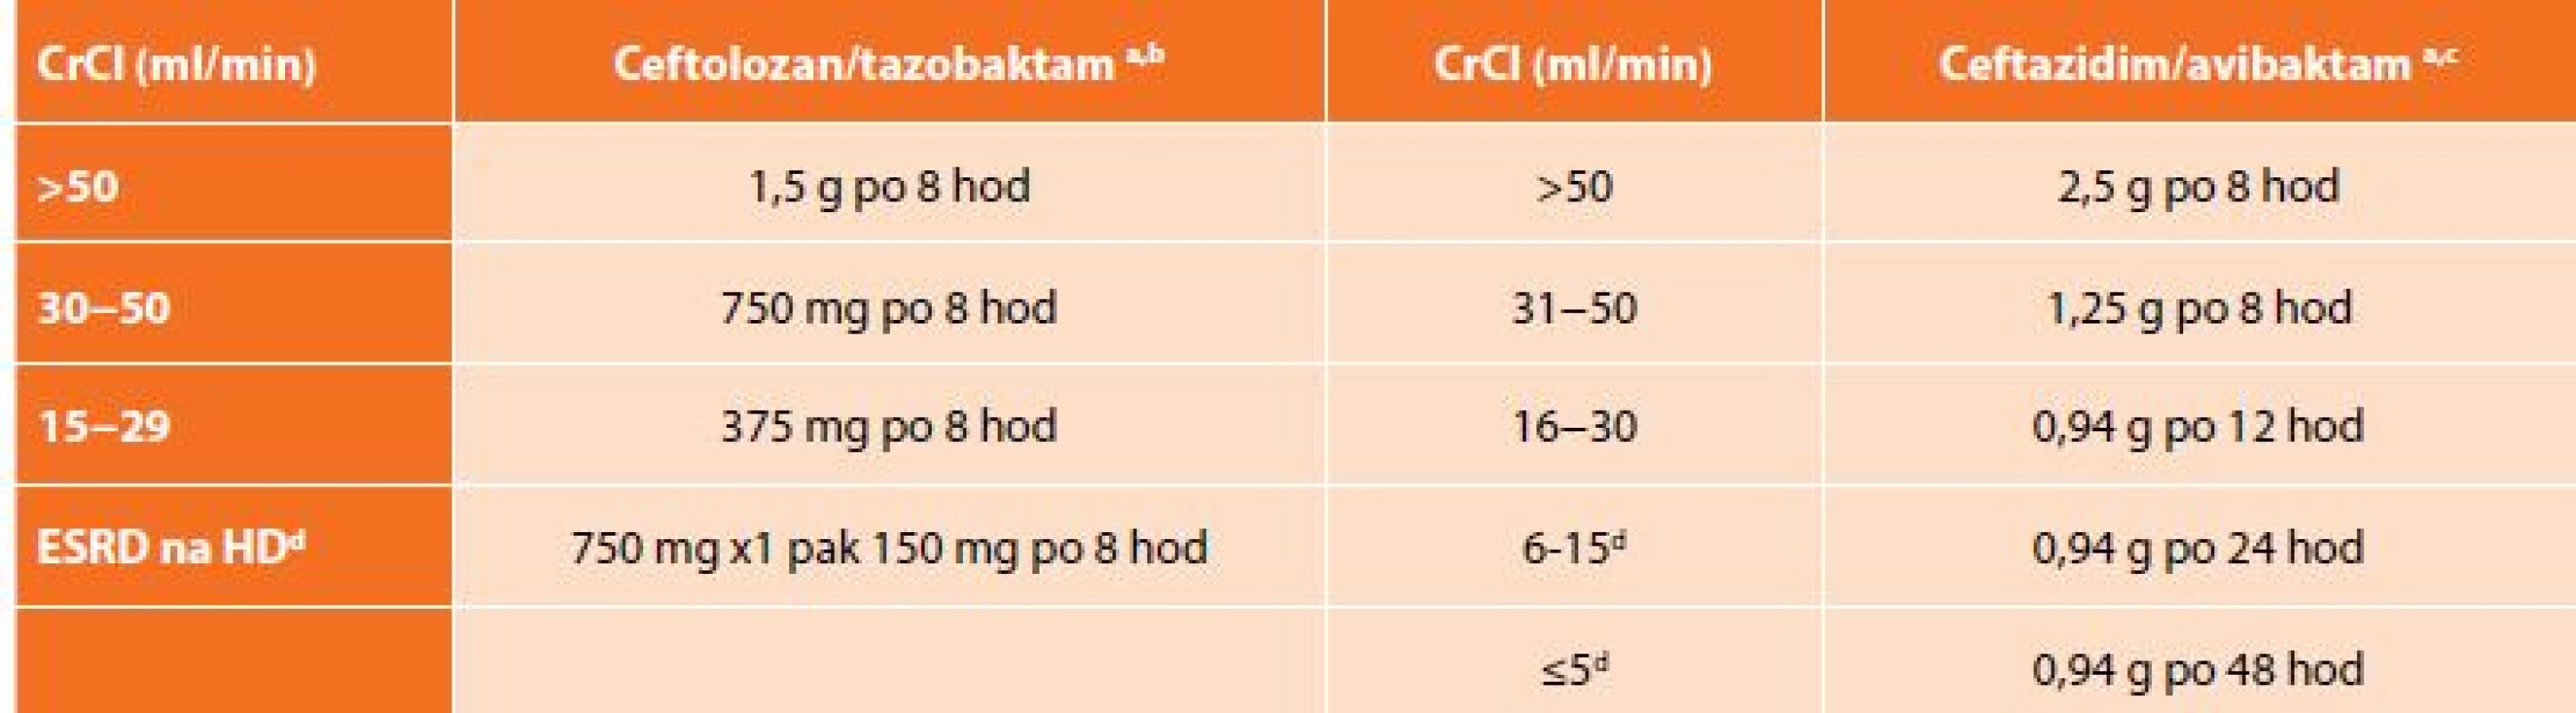 Dávkování ceftolozan/tazobaktamu a ceftazidim/avibaktamu při renální insuficienci<br>
Tab. 3: Dosage of ceftolozane/tazobactam and ceftazidime/avibactam in renal insufficiency